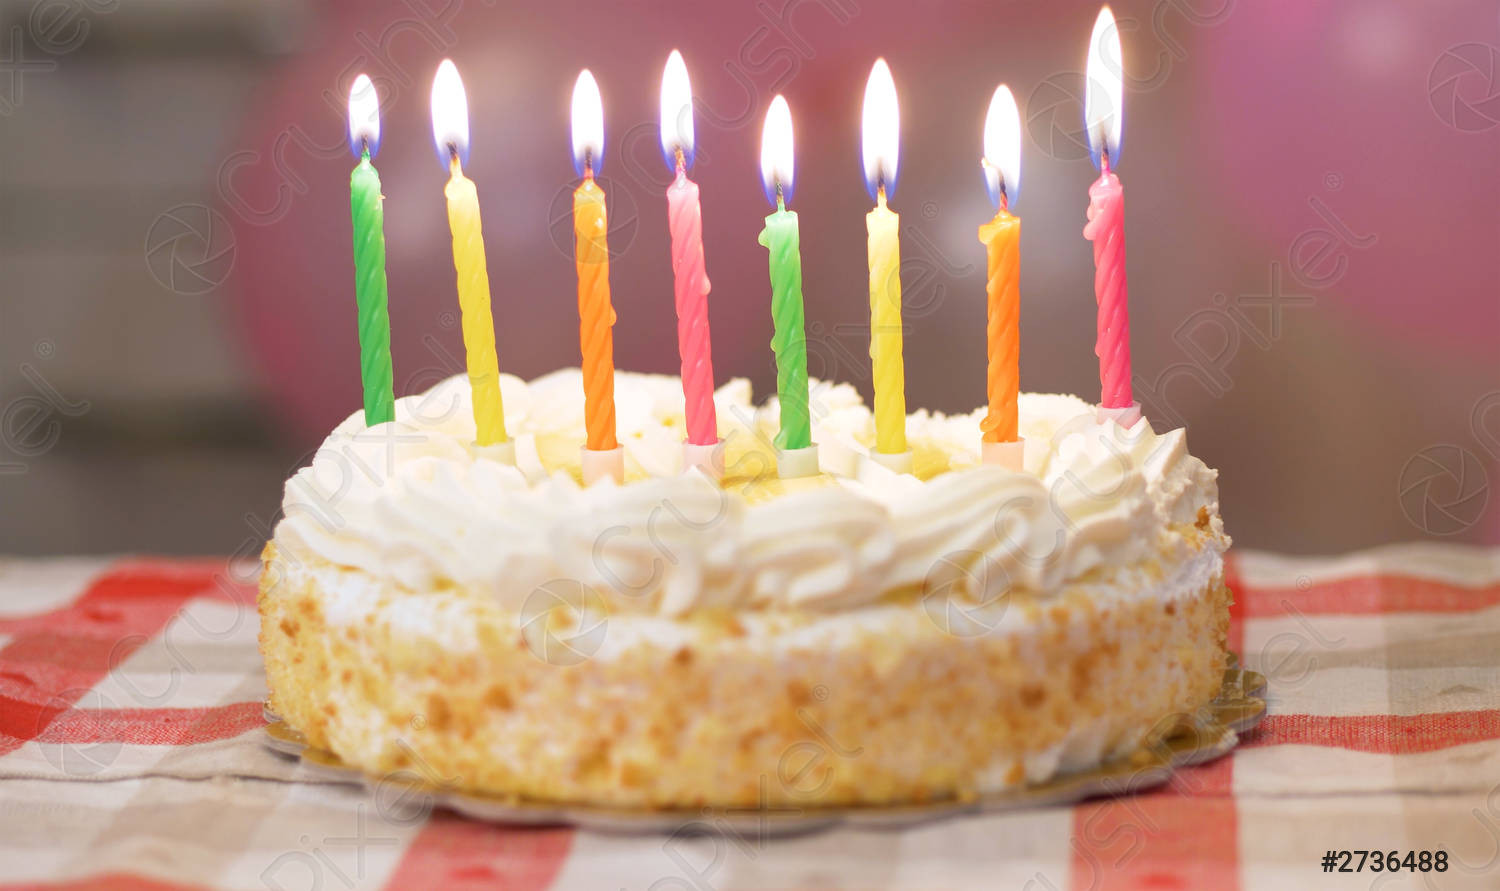 Joyeux anniversaire ! Trouvez le gâteau grâce aux indices !